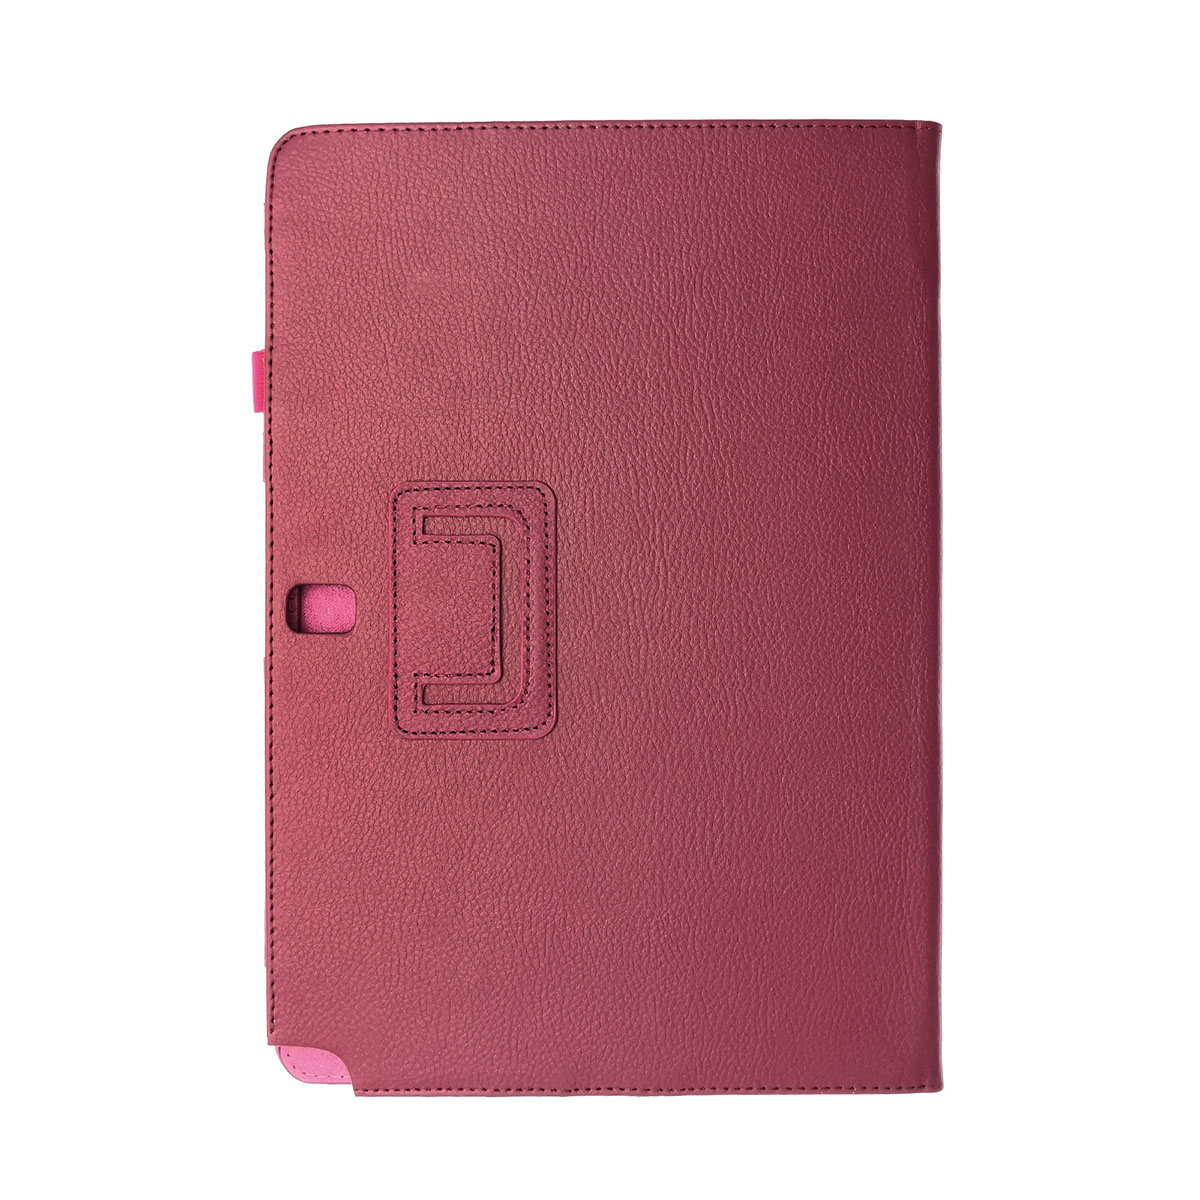 Чехол книжка для SAMSUNG Galaxy Note Pro 12.2 (SM-P900), экокожа, цвет малиновый.